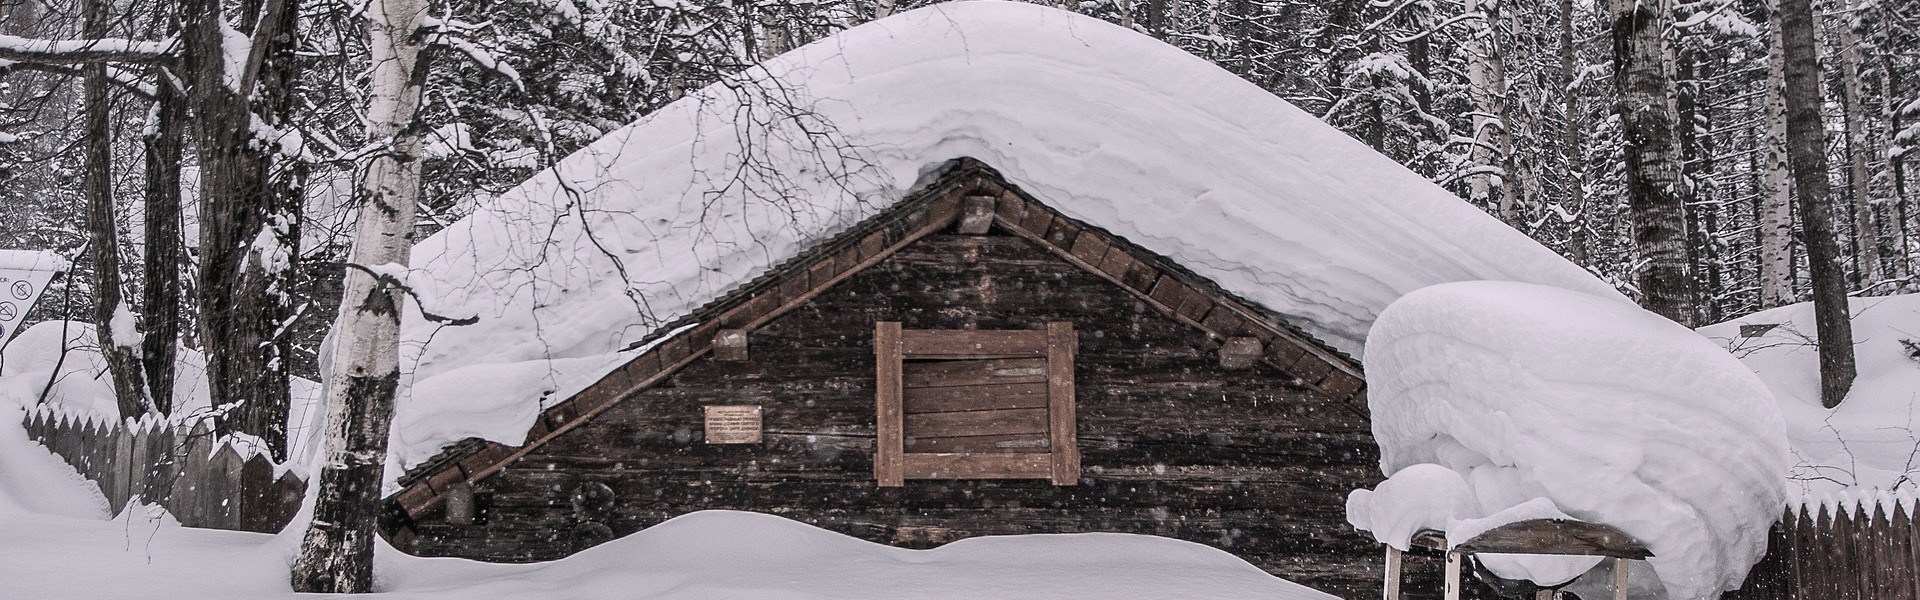 Snowy_cabin_in_Siberia.jpg